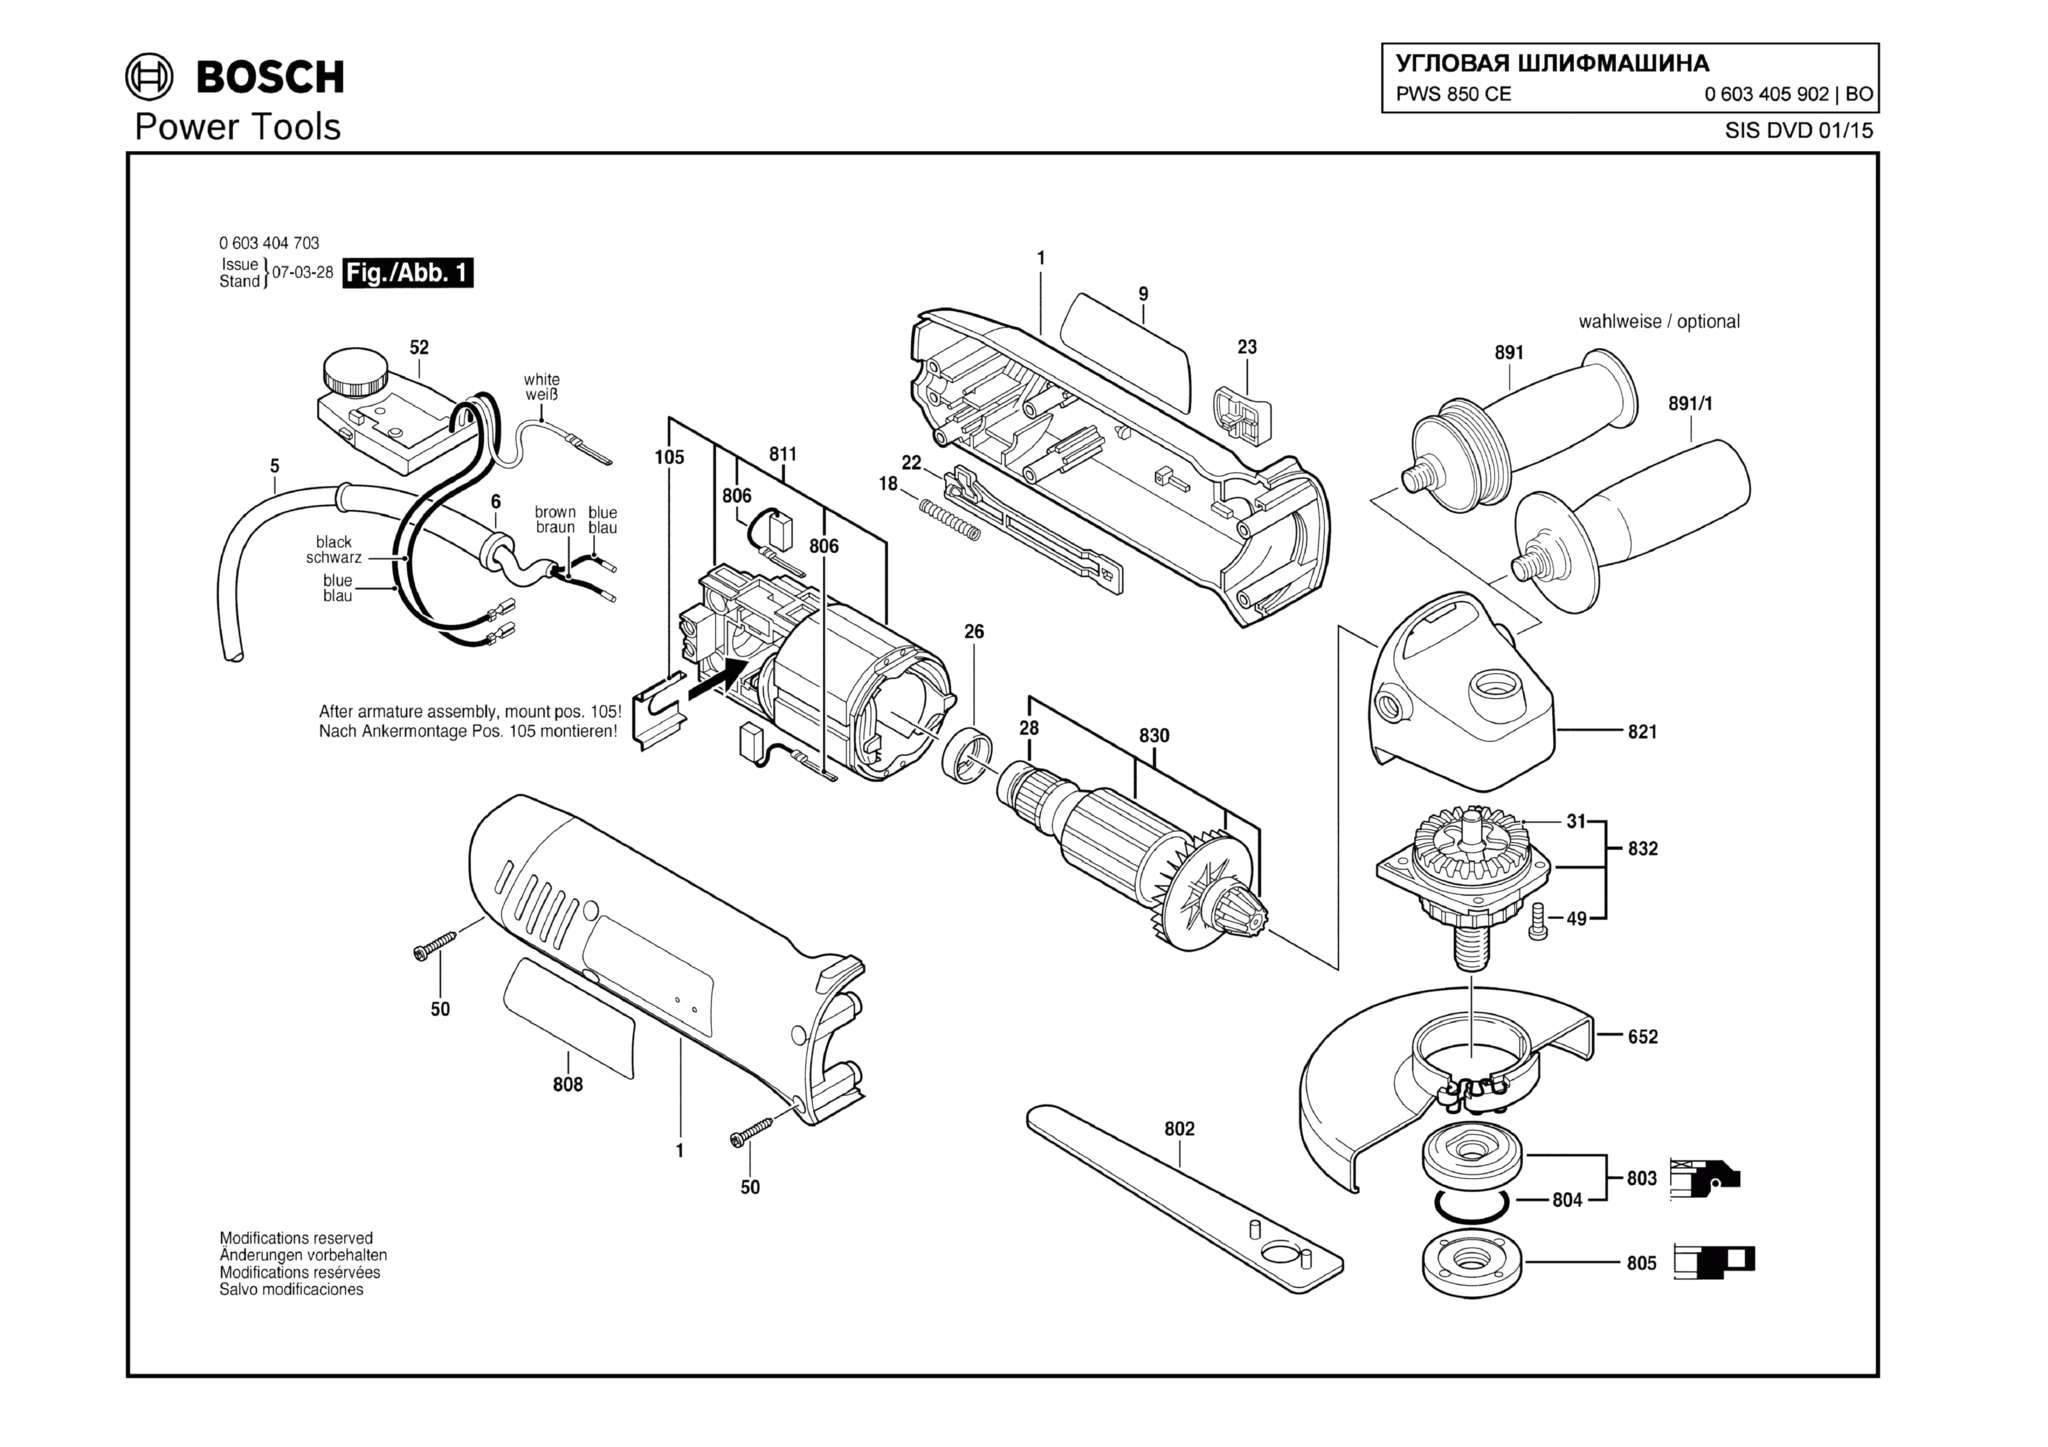 Запчасти, схема и деталировка Bosch PWS 850 CE (ТИП 0603405902)